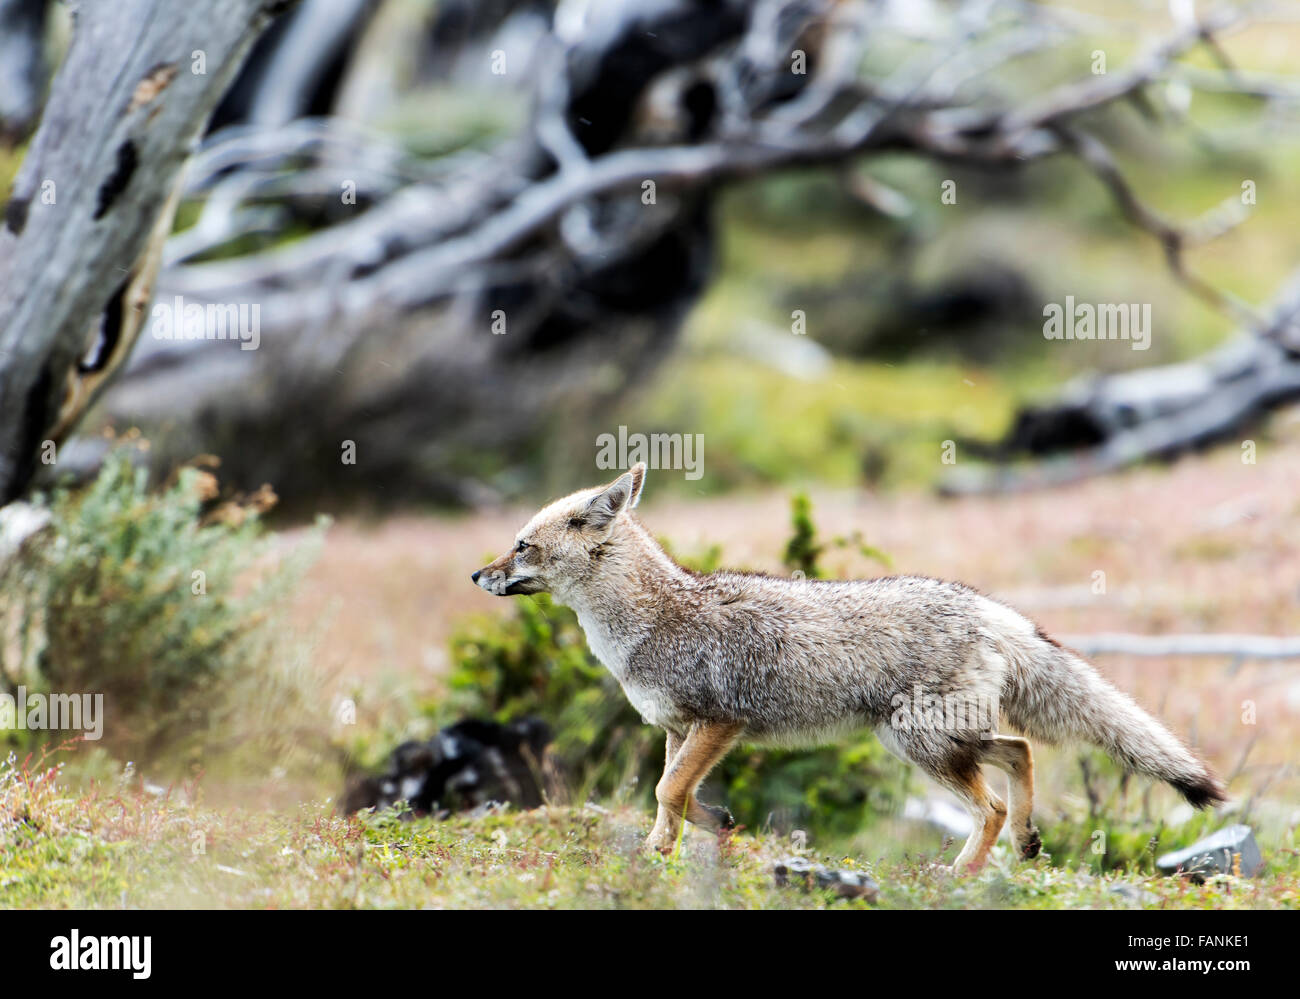 / Amérique du Sud (renard gris de Patagonie Lycalopex griseus) Parc National Torres del Paine Patagonie Chilienne Chili Banque D'Images